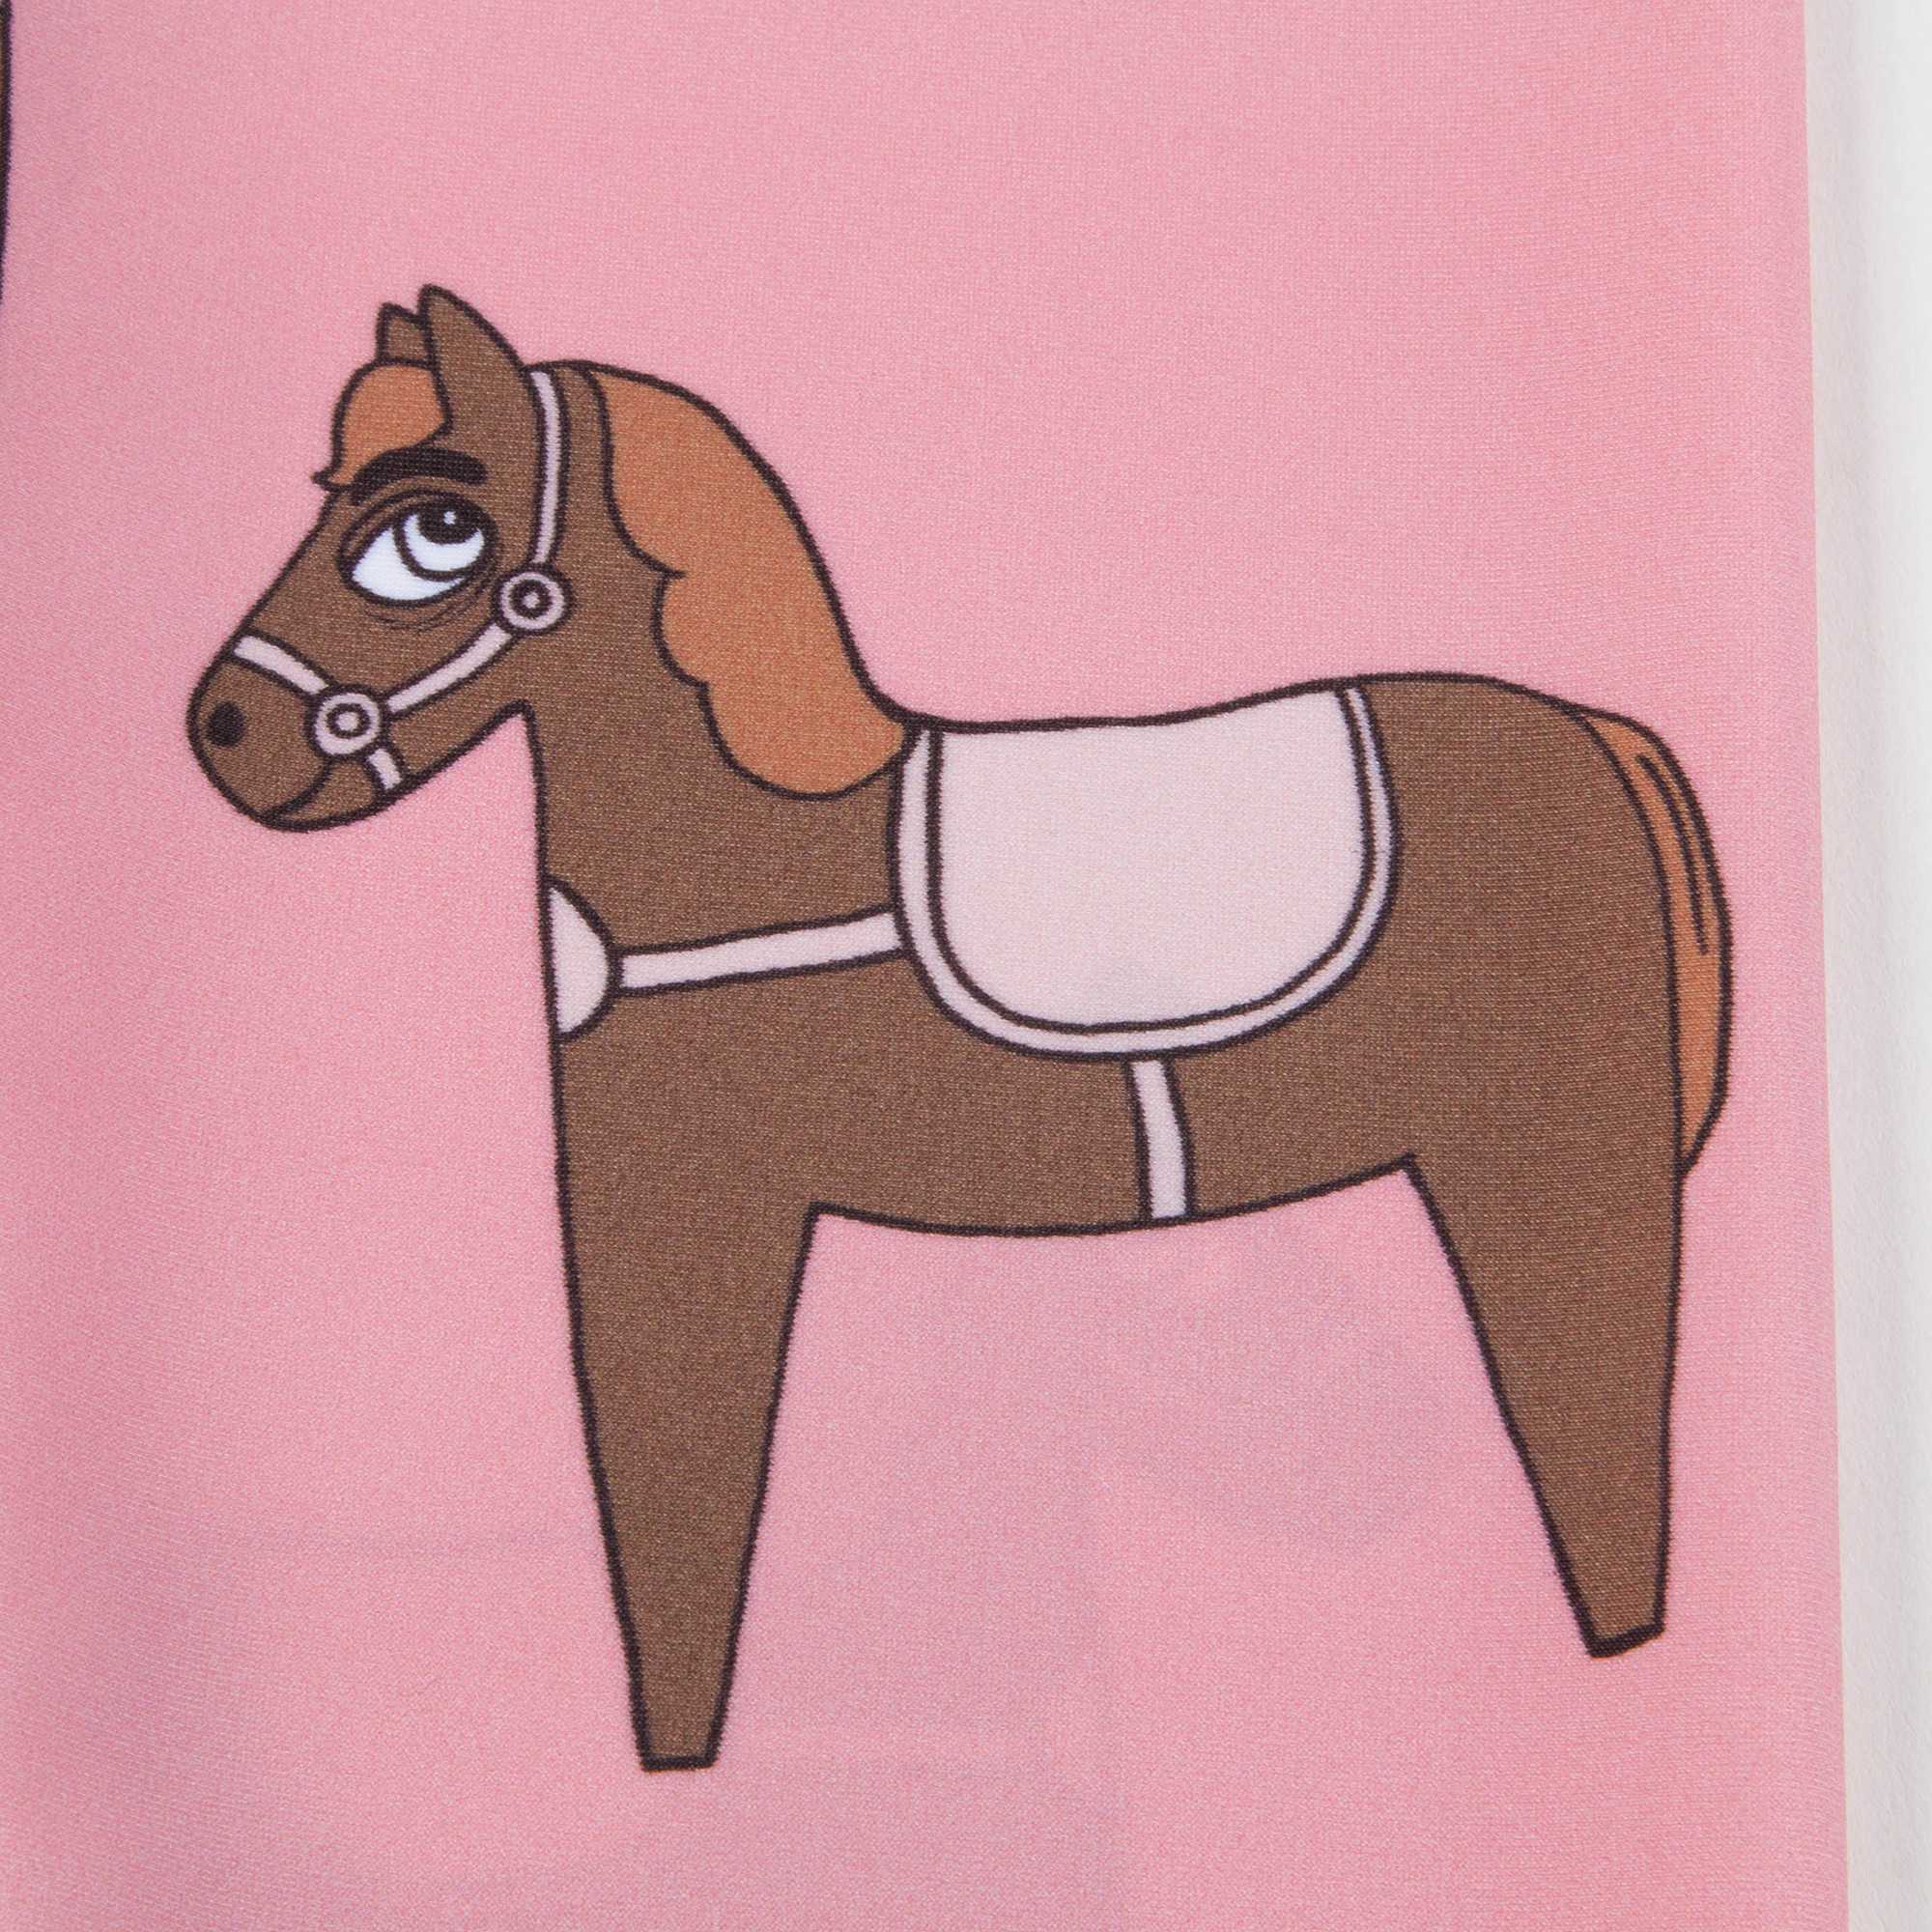 Girls Pink Horse Fancy Swimwear Leggings